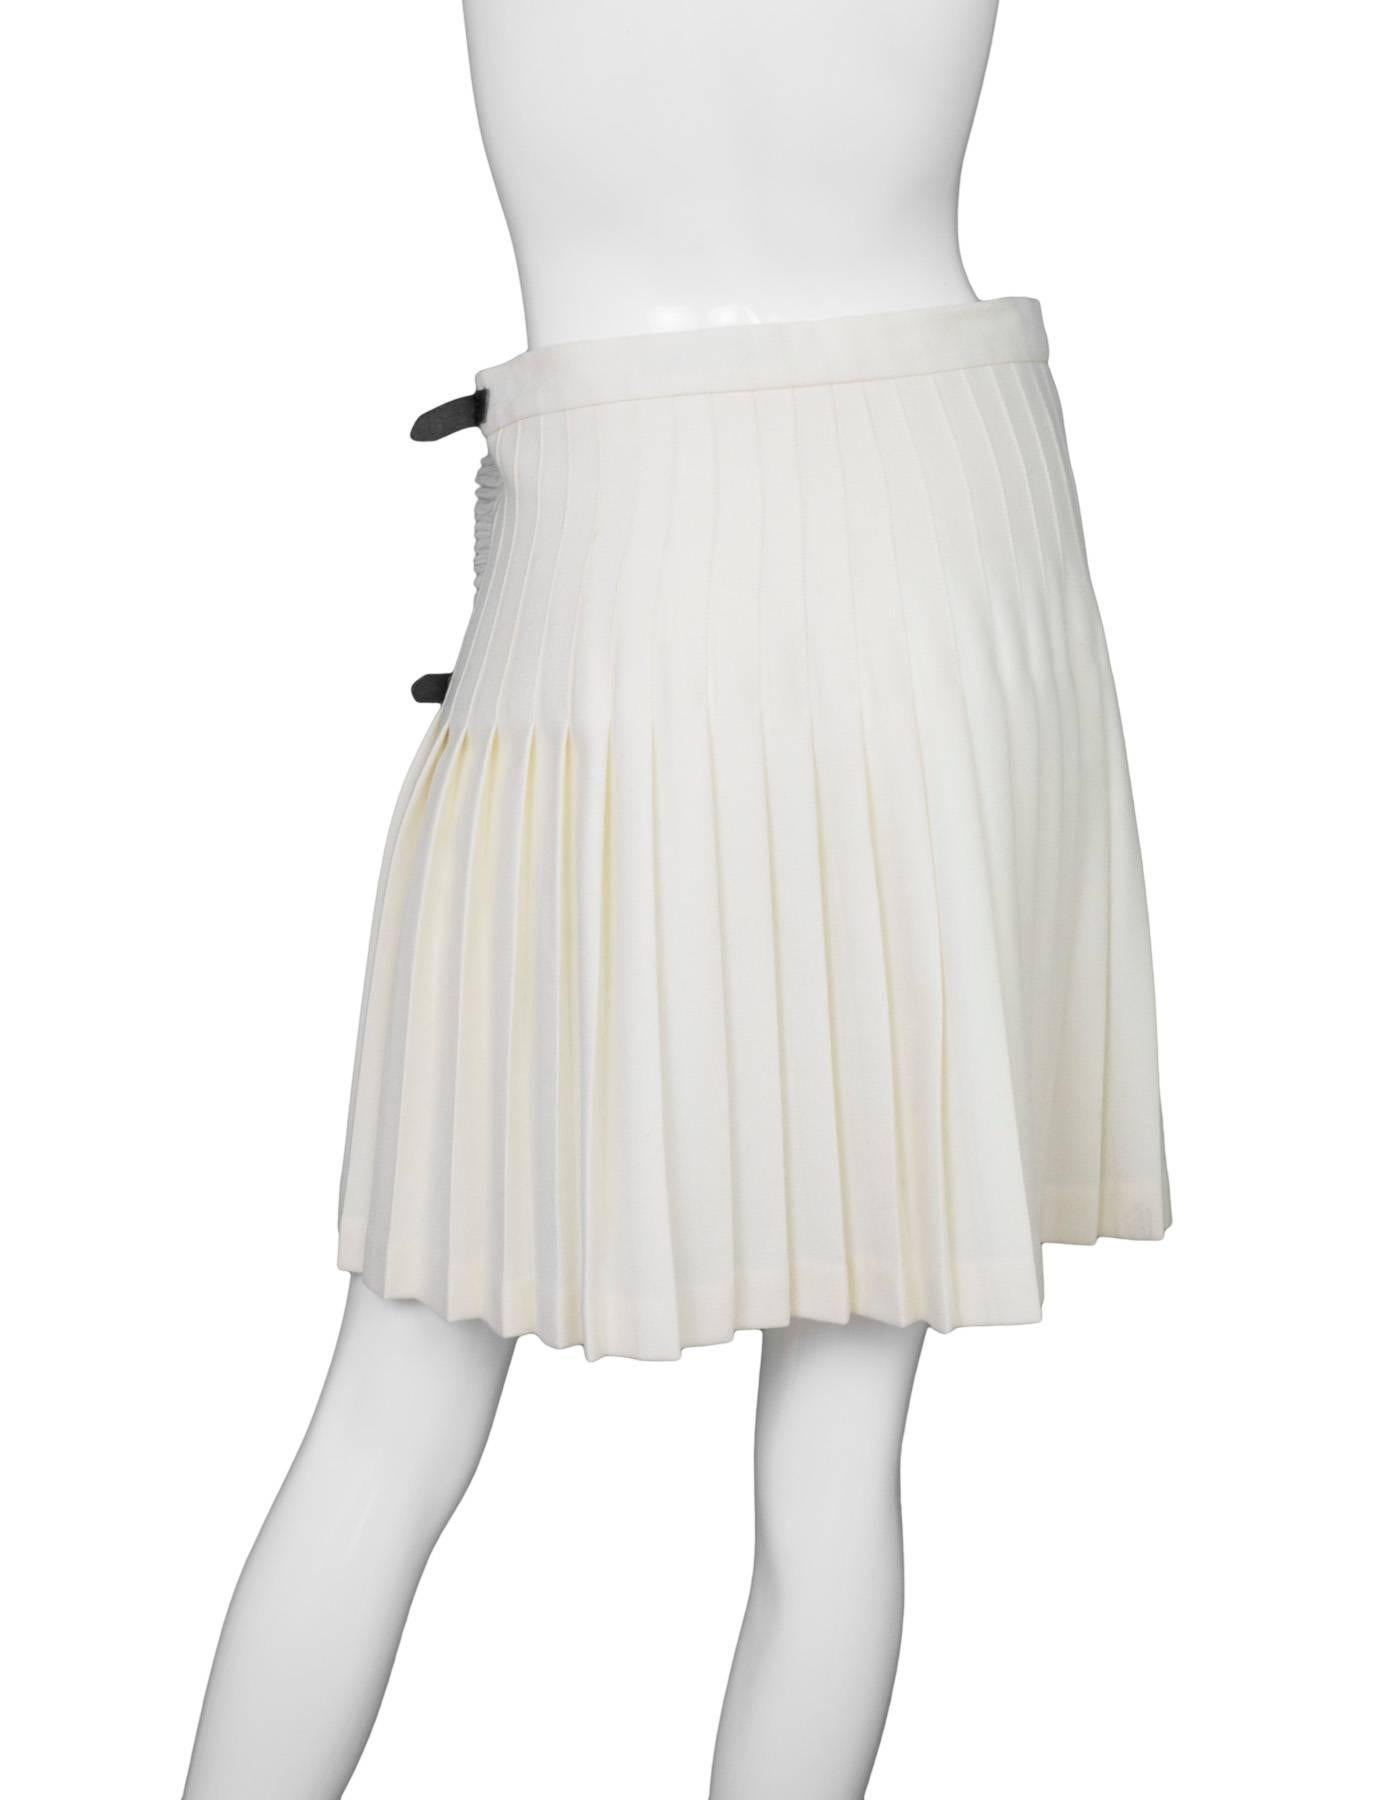 burberry white skirt